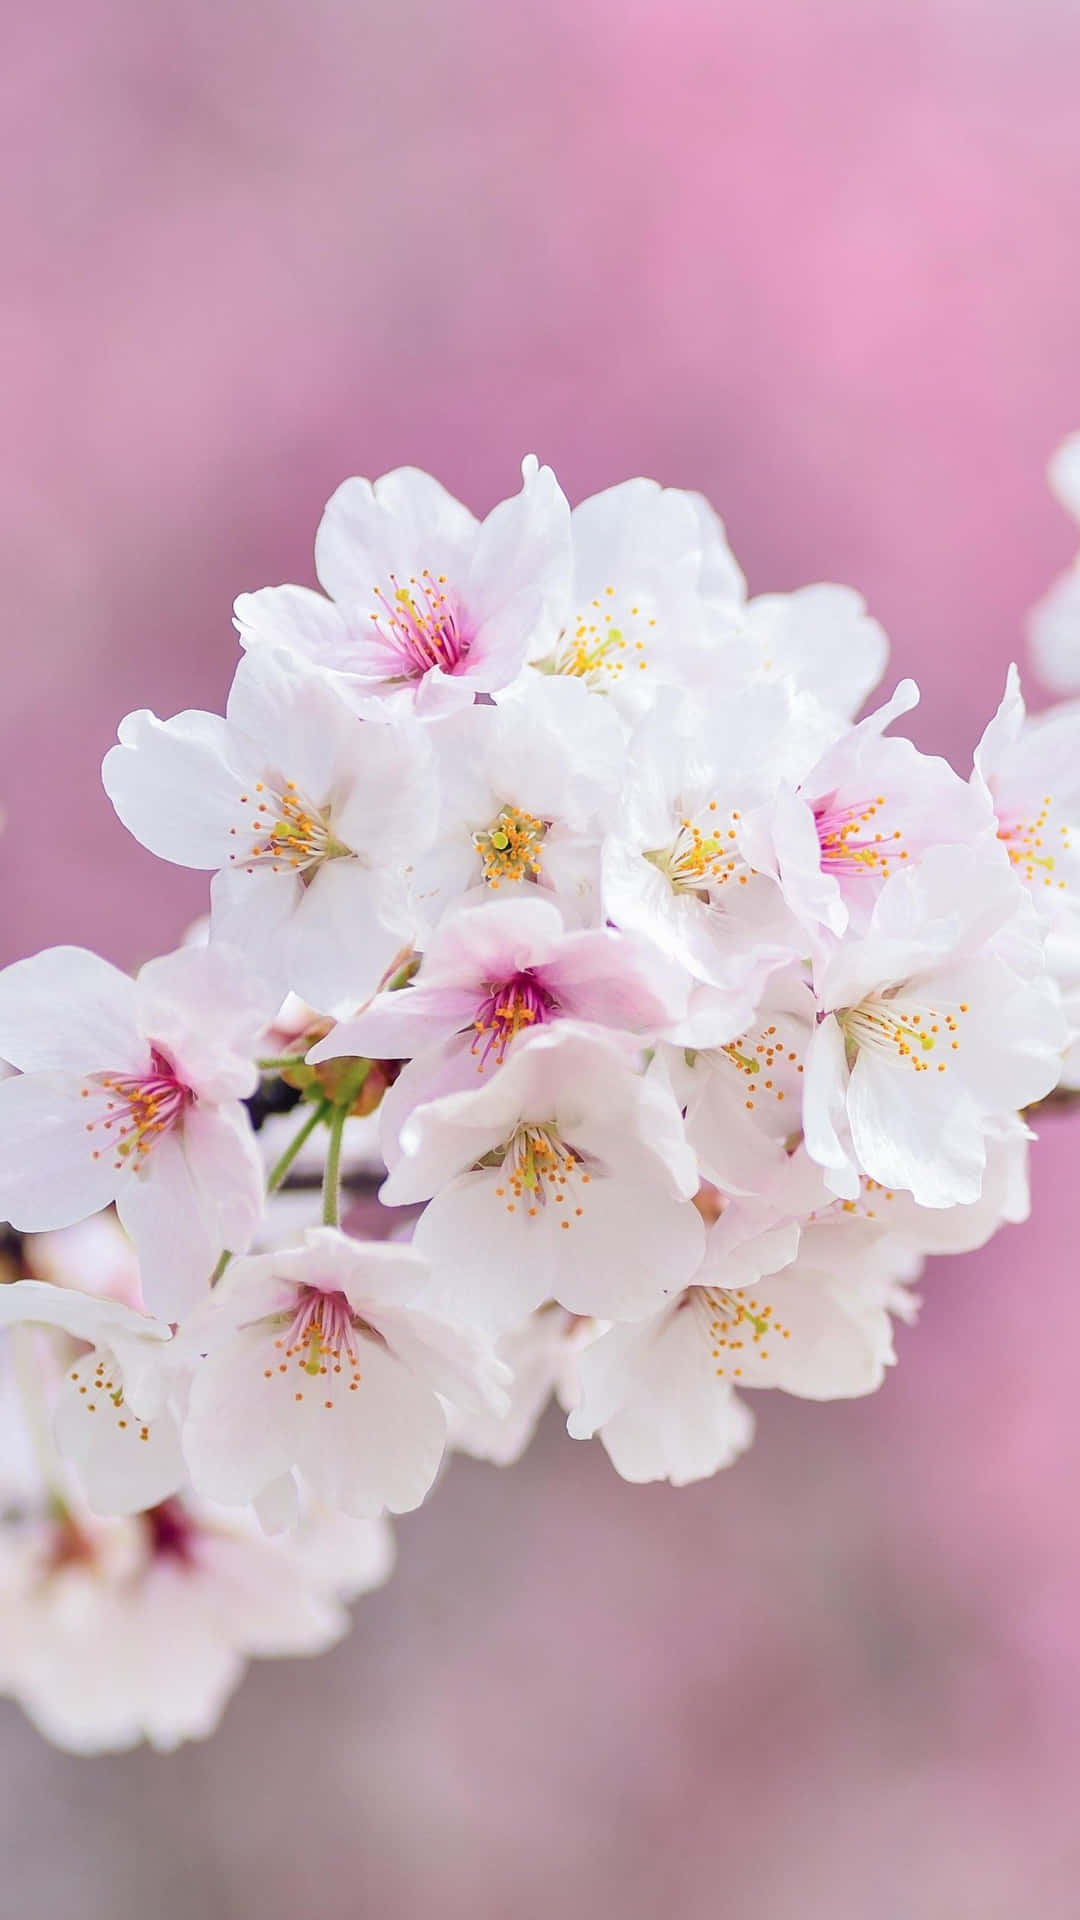 Spring Bloom - Vibrant Nature in Full Swing Wallpaper